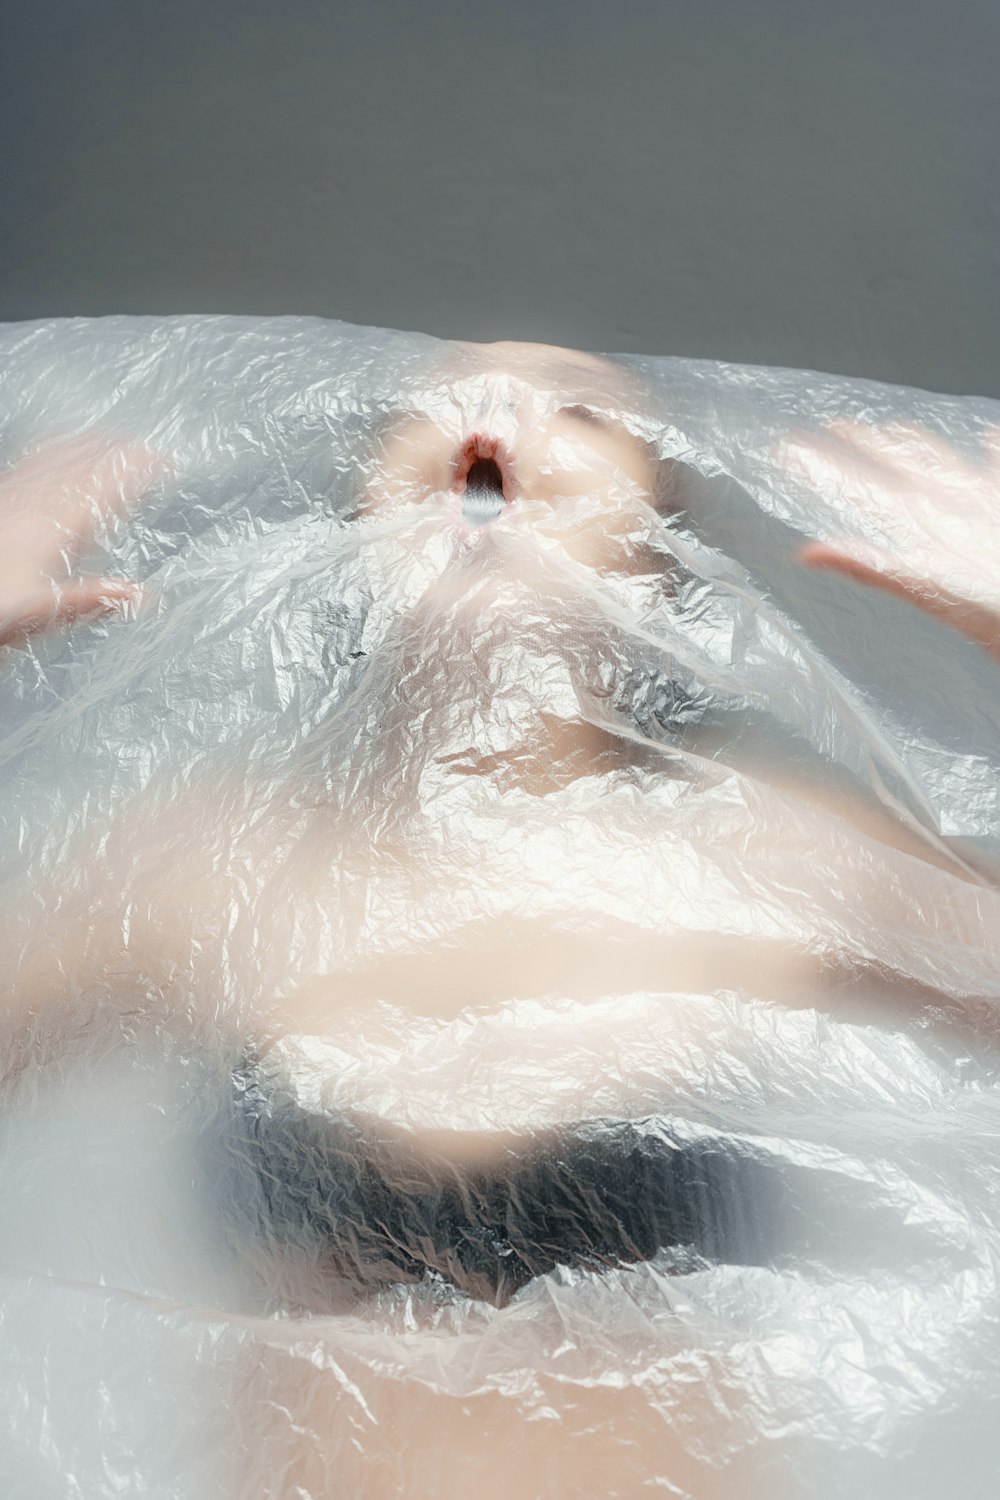 비닐로 덮인 욕조에 누워 있는 여성